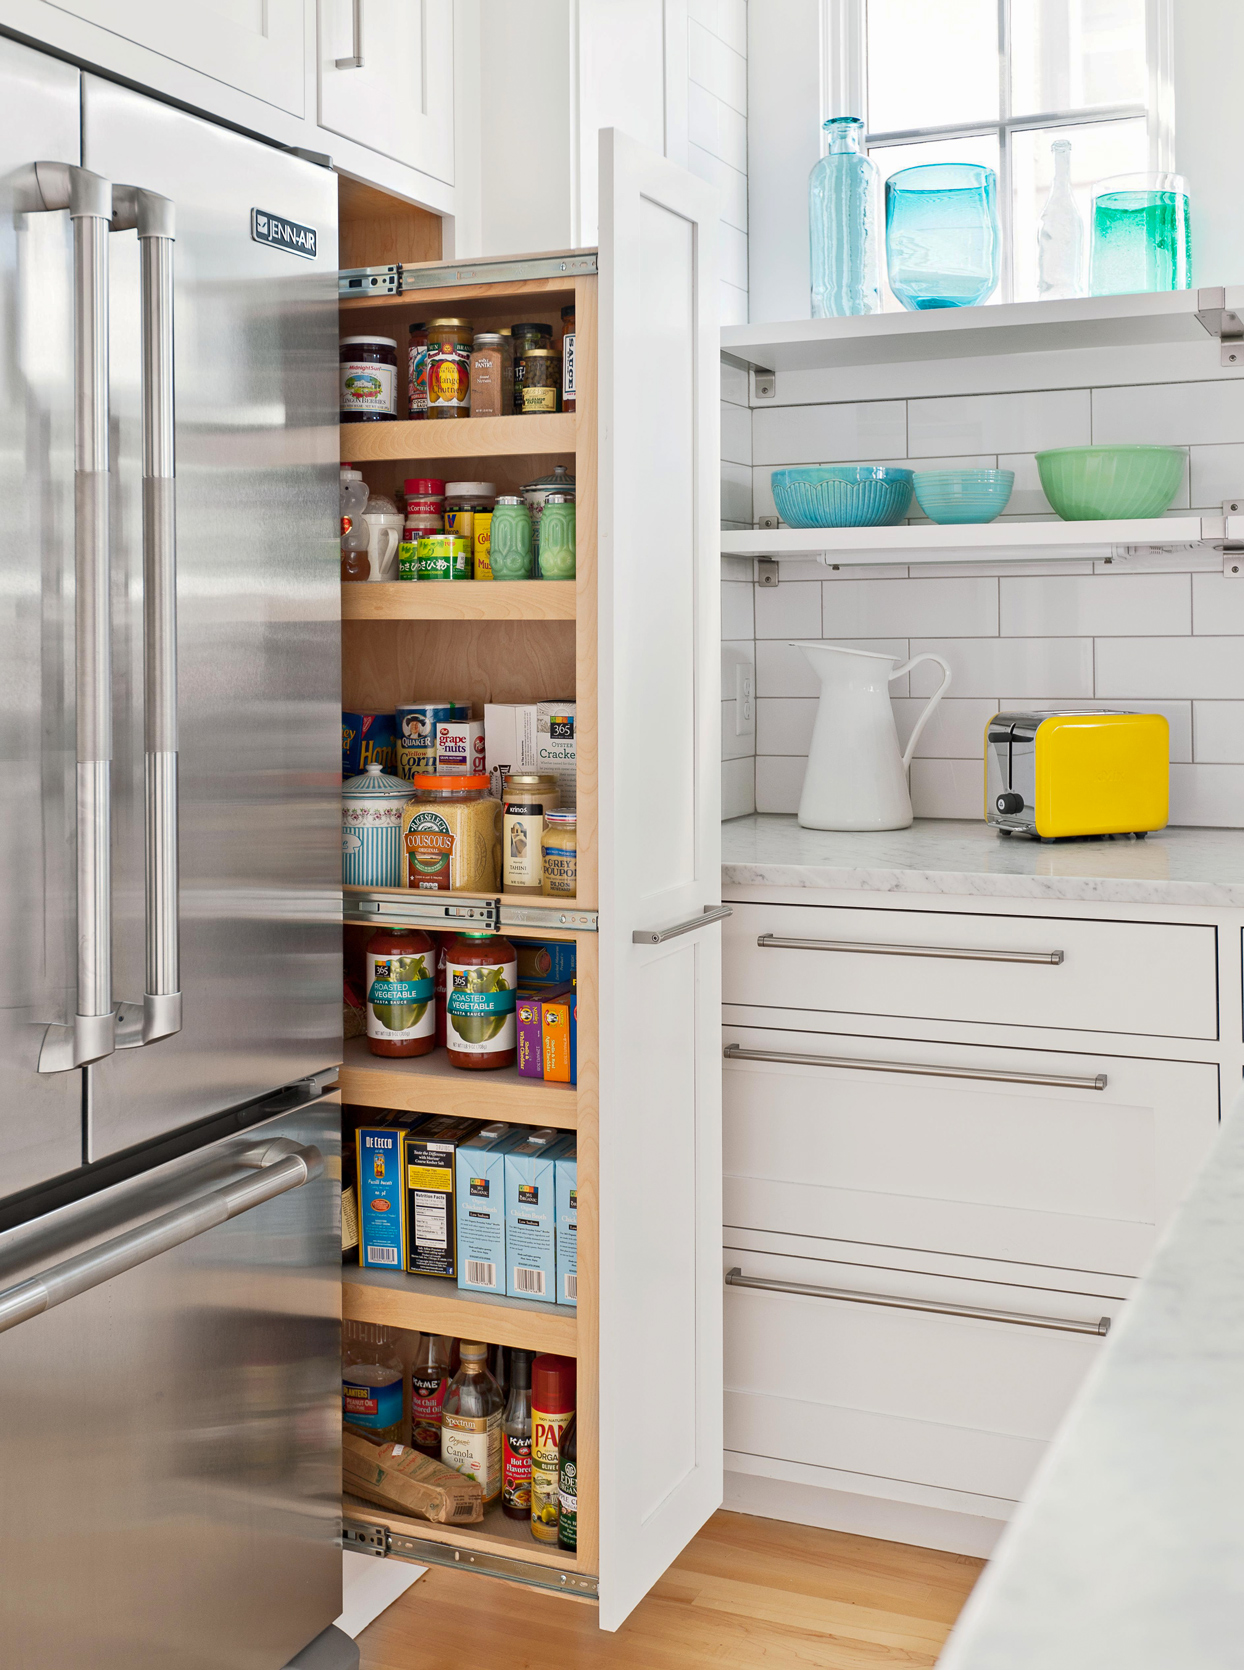 Cửa ẩn bên tủ lạnh chẳng khác gì một 'nhà kho' mini cho các loại gia vị, đồ khô và thức ăn đóng hộp đúng không nào?